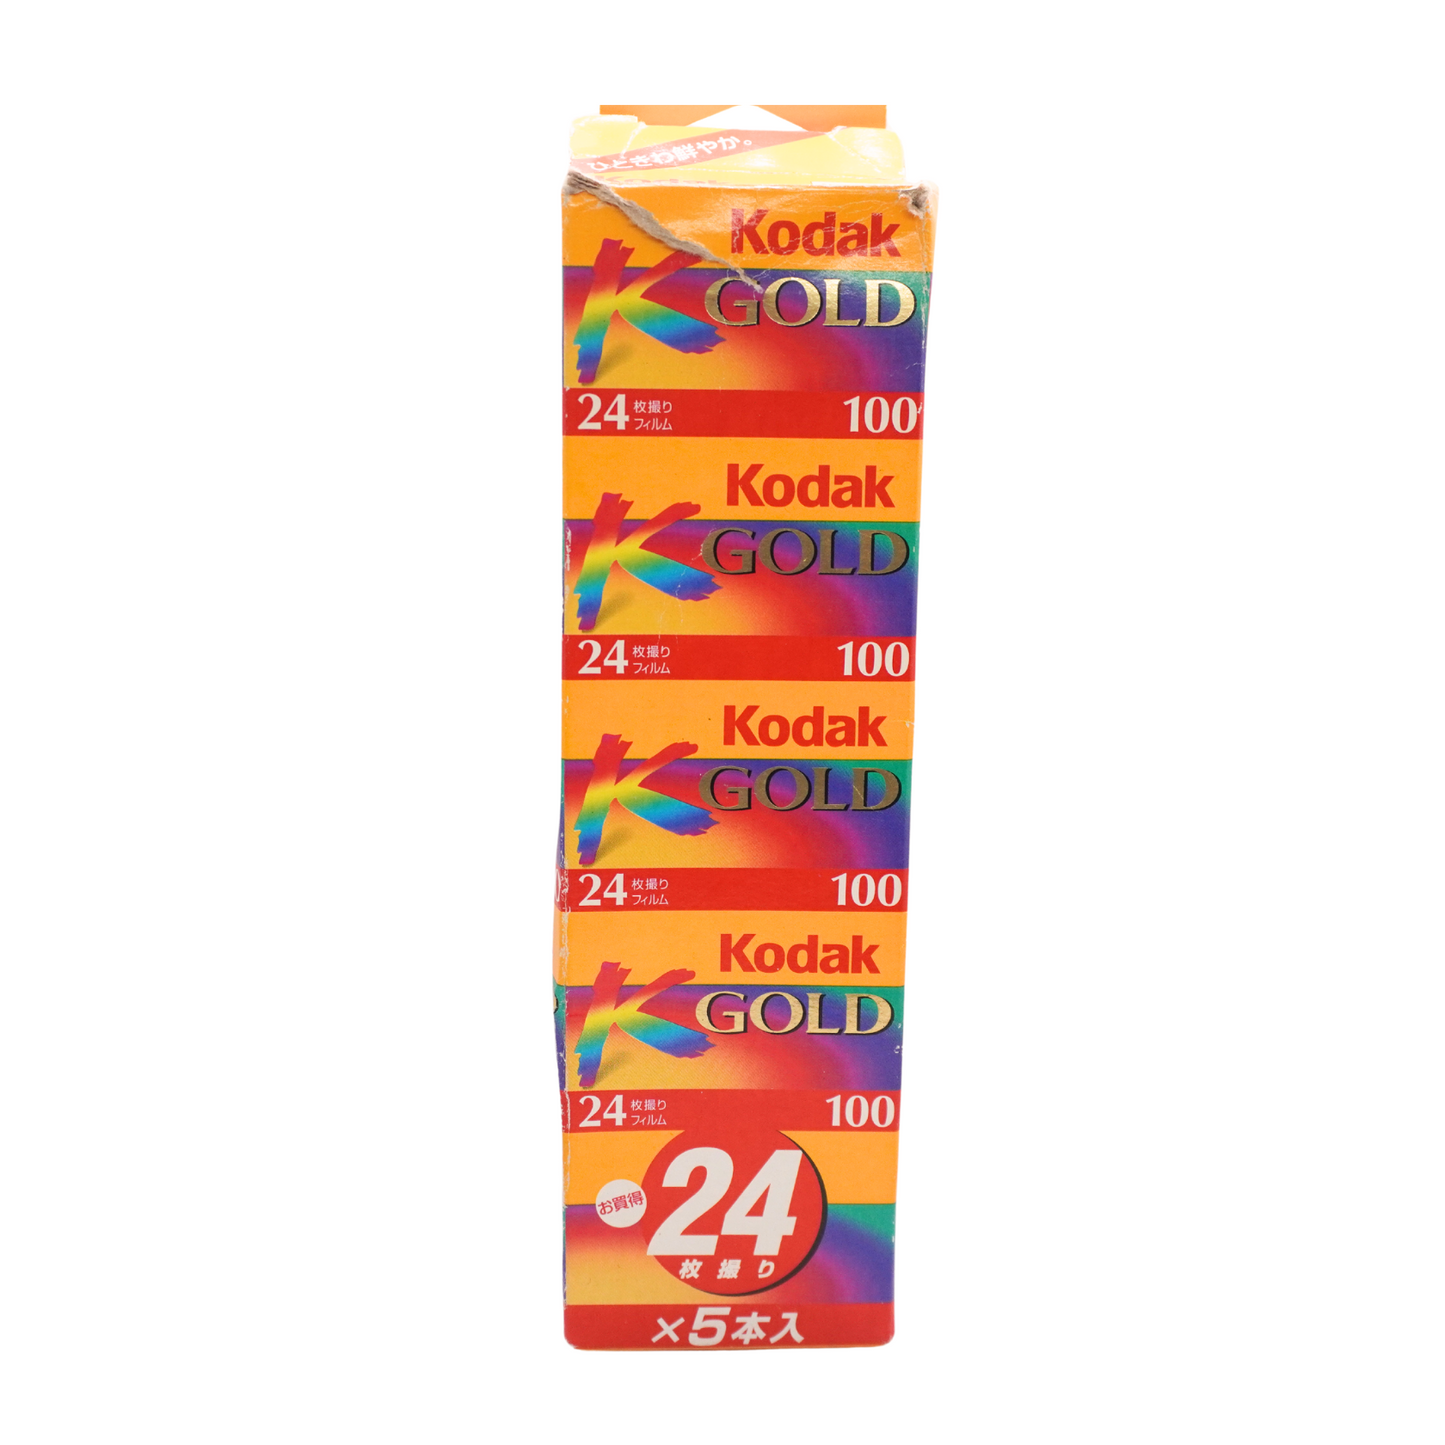 Kodak Gold 100 24exp Expired Film (2001/05) (roll)